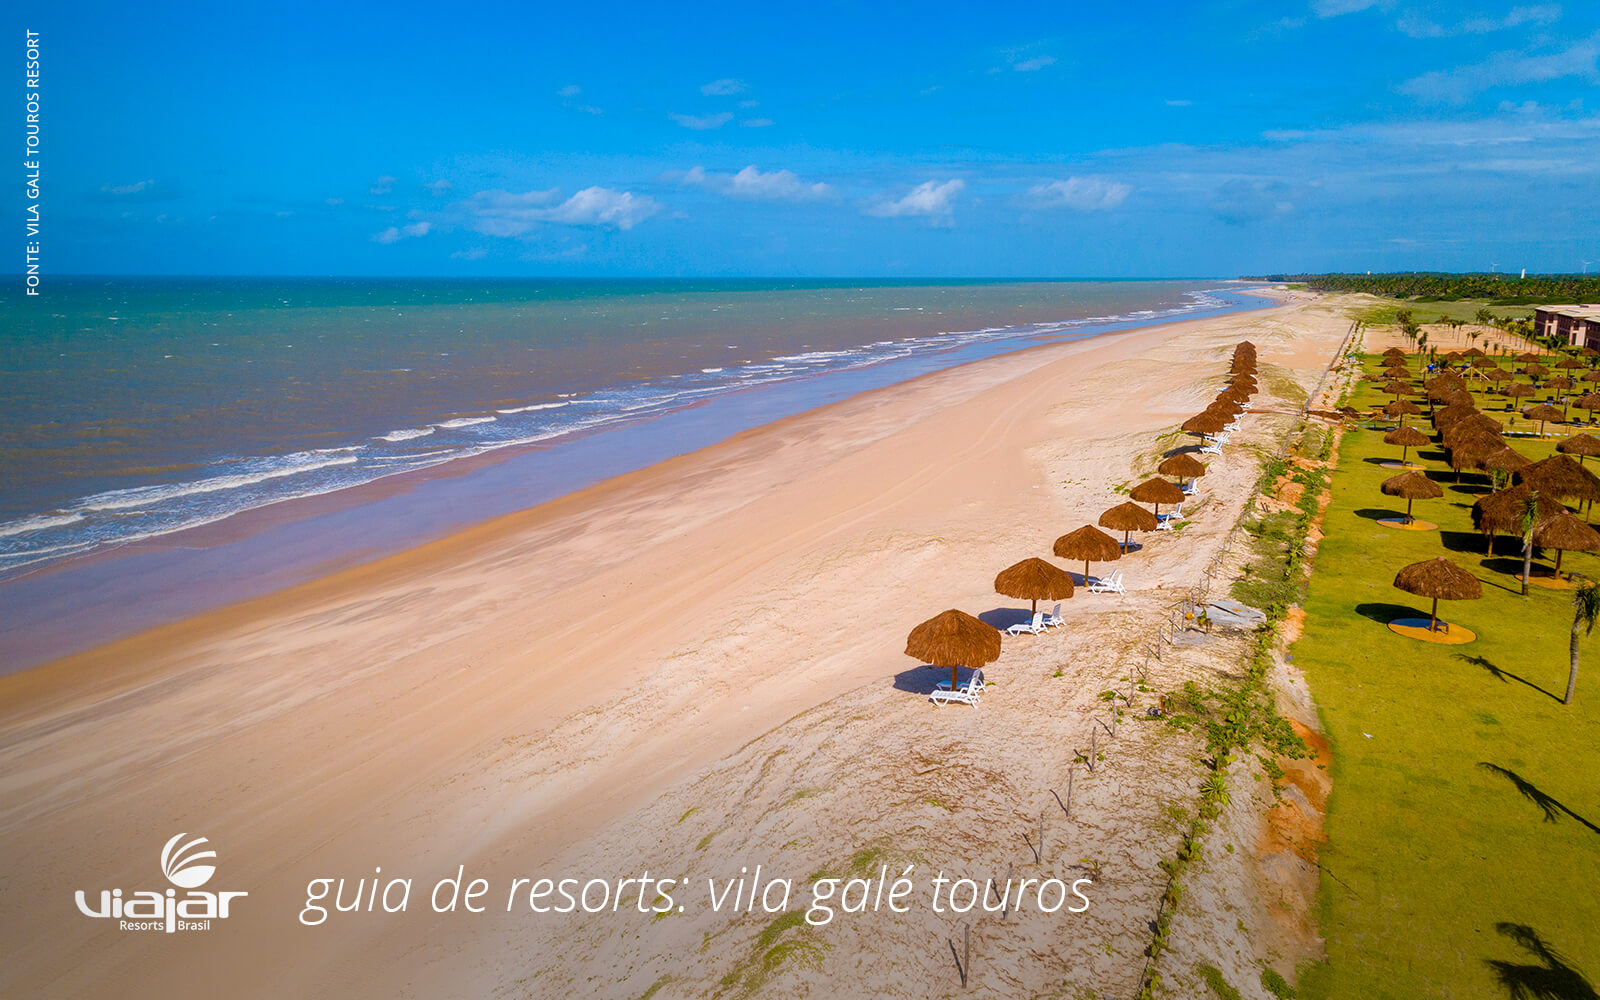 Vila Galé Touros: dicas imperdíveis sobre o resort! - Viajar Resorts Brasil